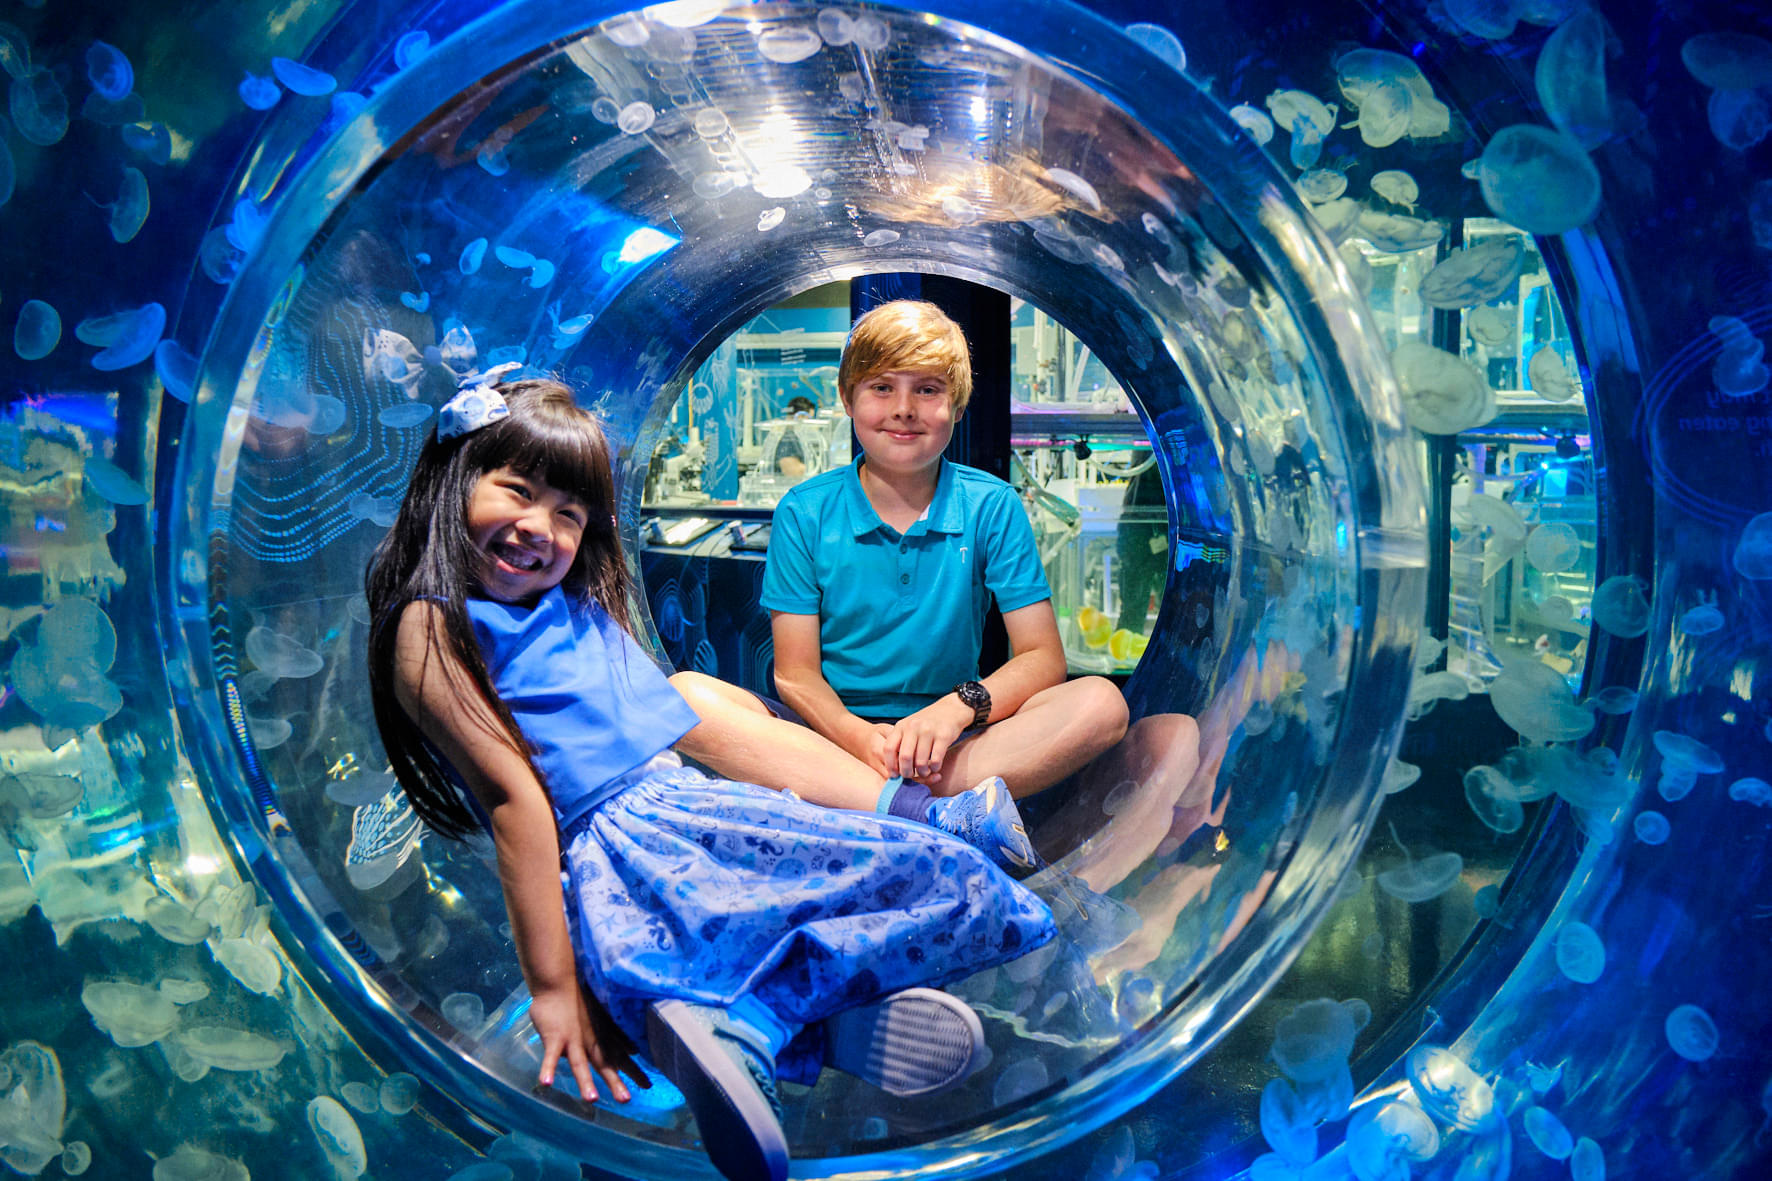 Bring your kids to Sea Life Aquarium